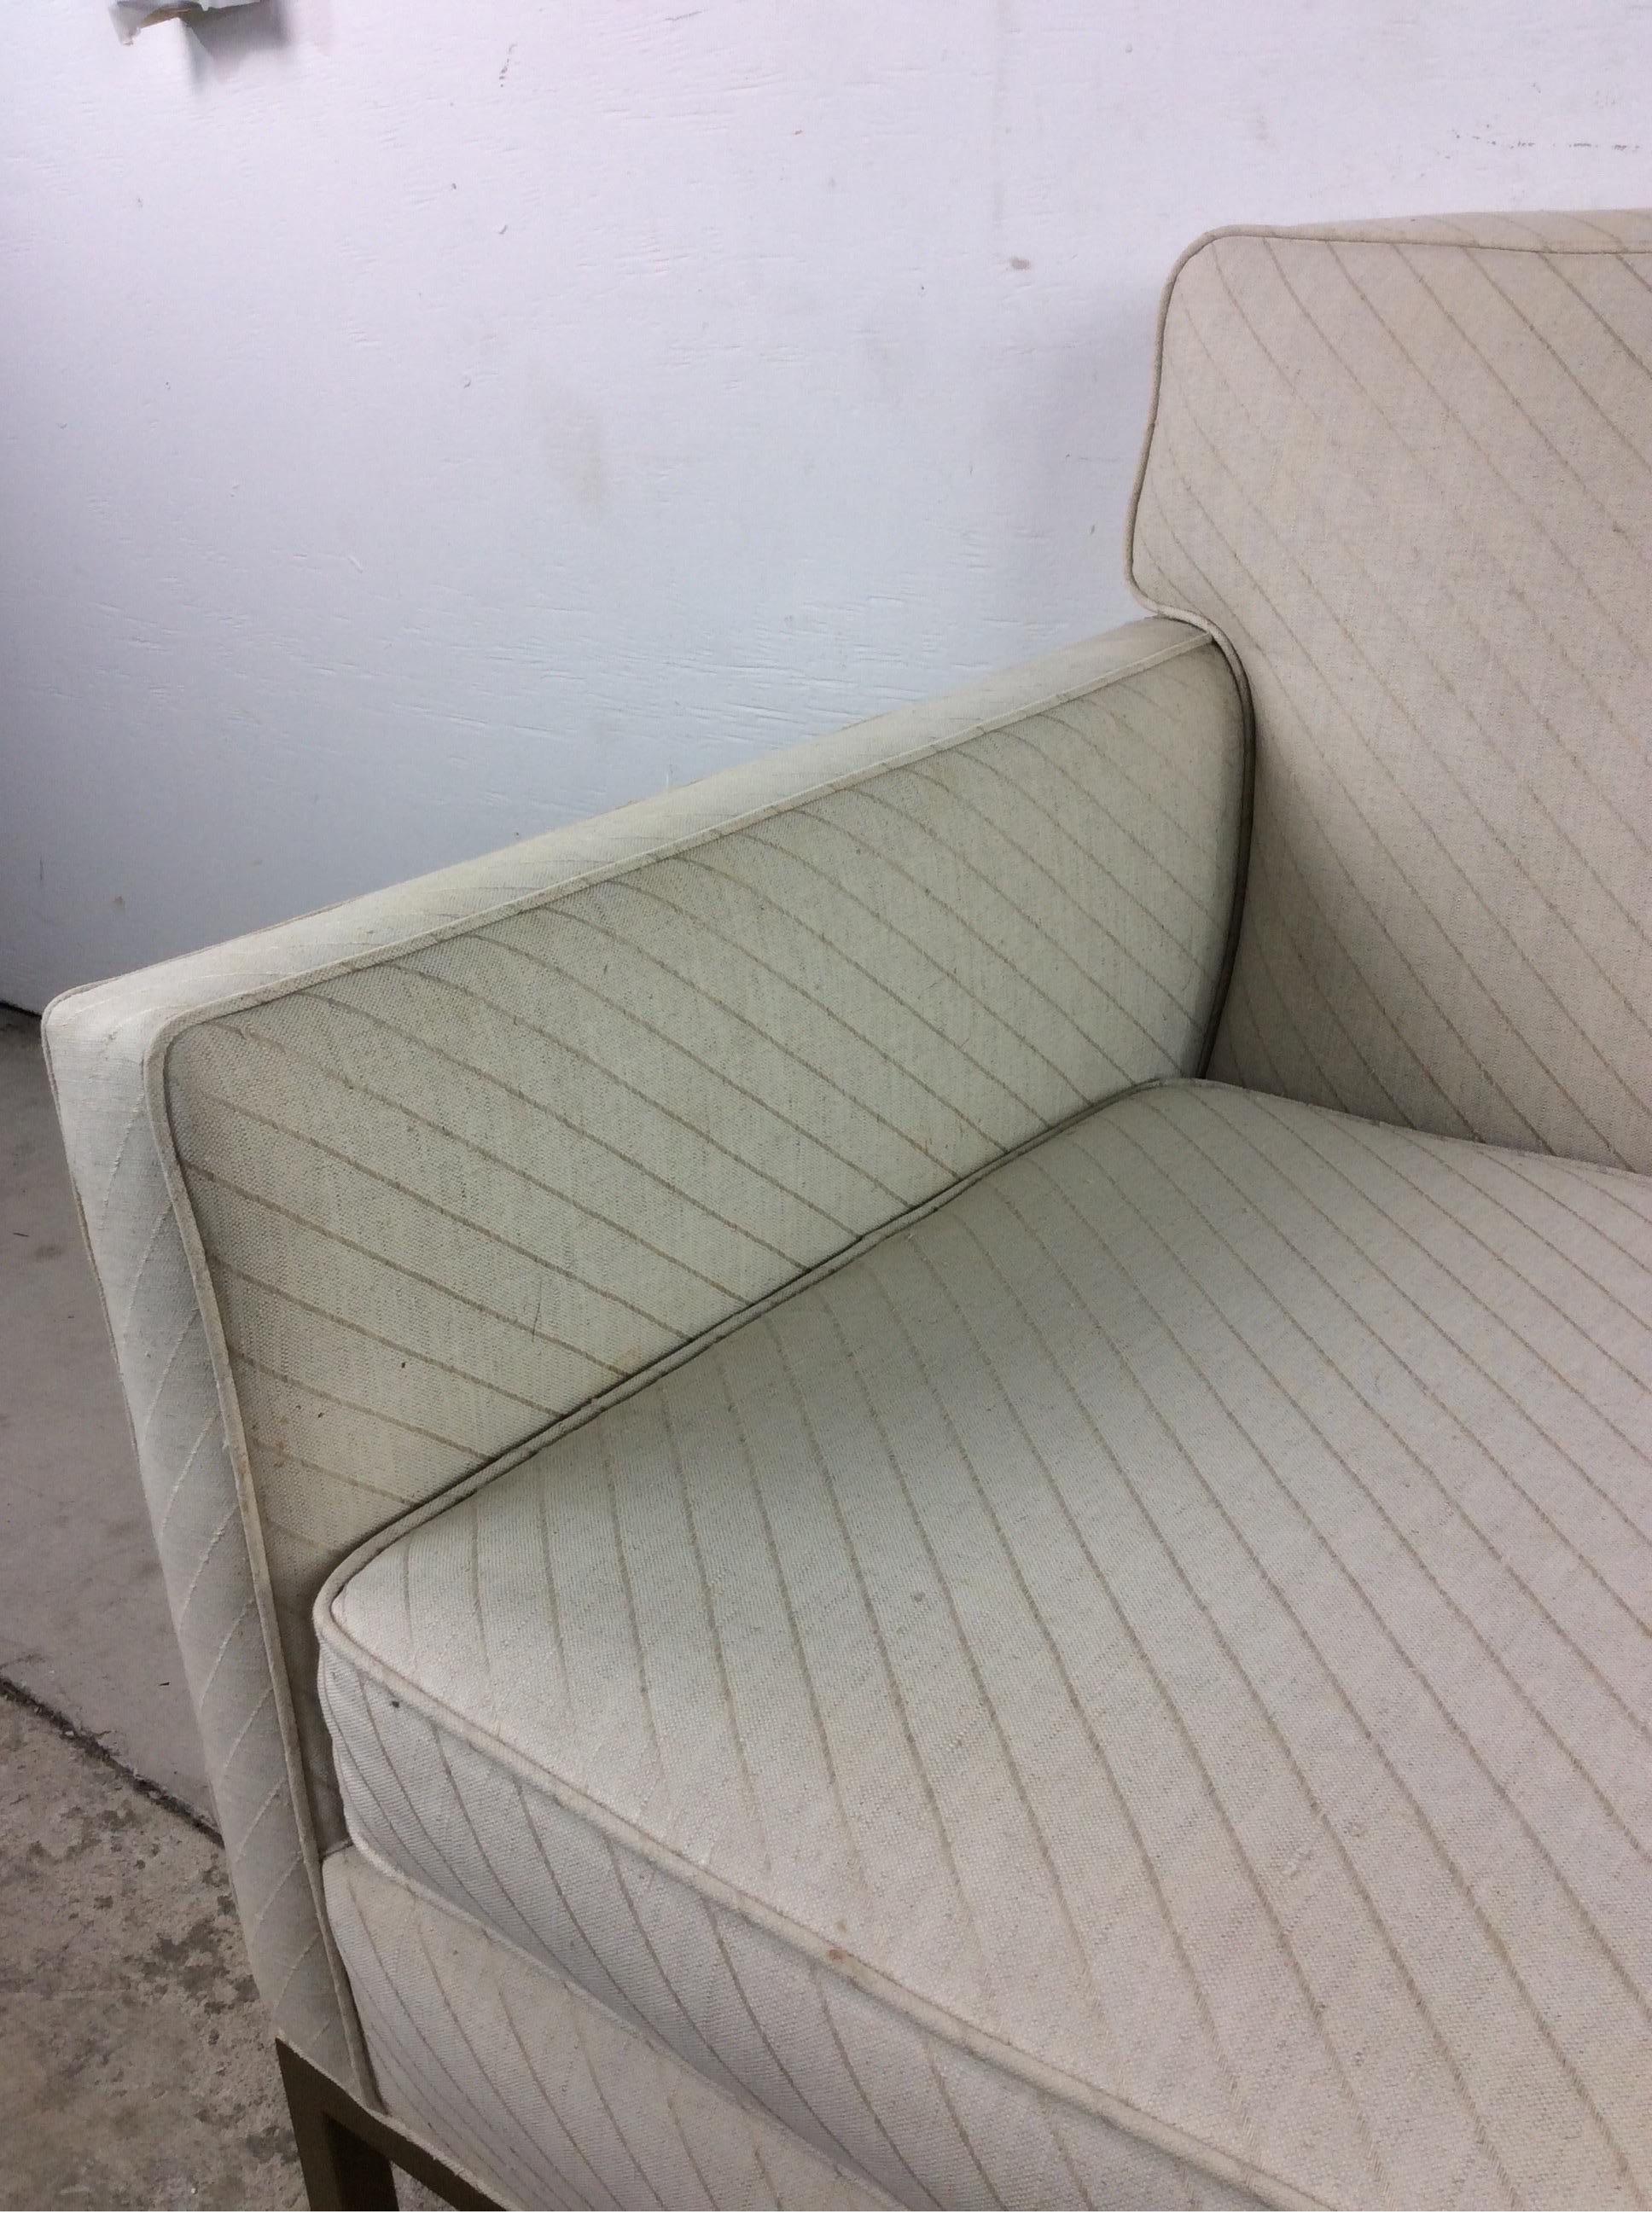 Dieser moderne Sessel aus der Mitte des Jahrhunderts hat eine Vintage-Polsterung, zwei abnehmbare Kissen und einzigartige Beine und Sockel mit Messingakzenten. 

Ein Dreisitzersofa ist separat erhältlich.